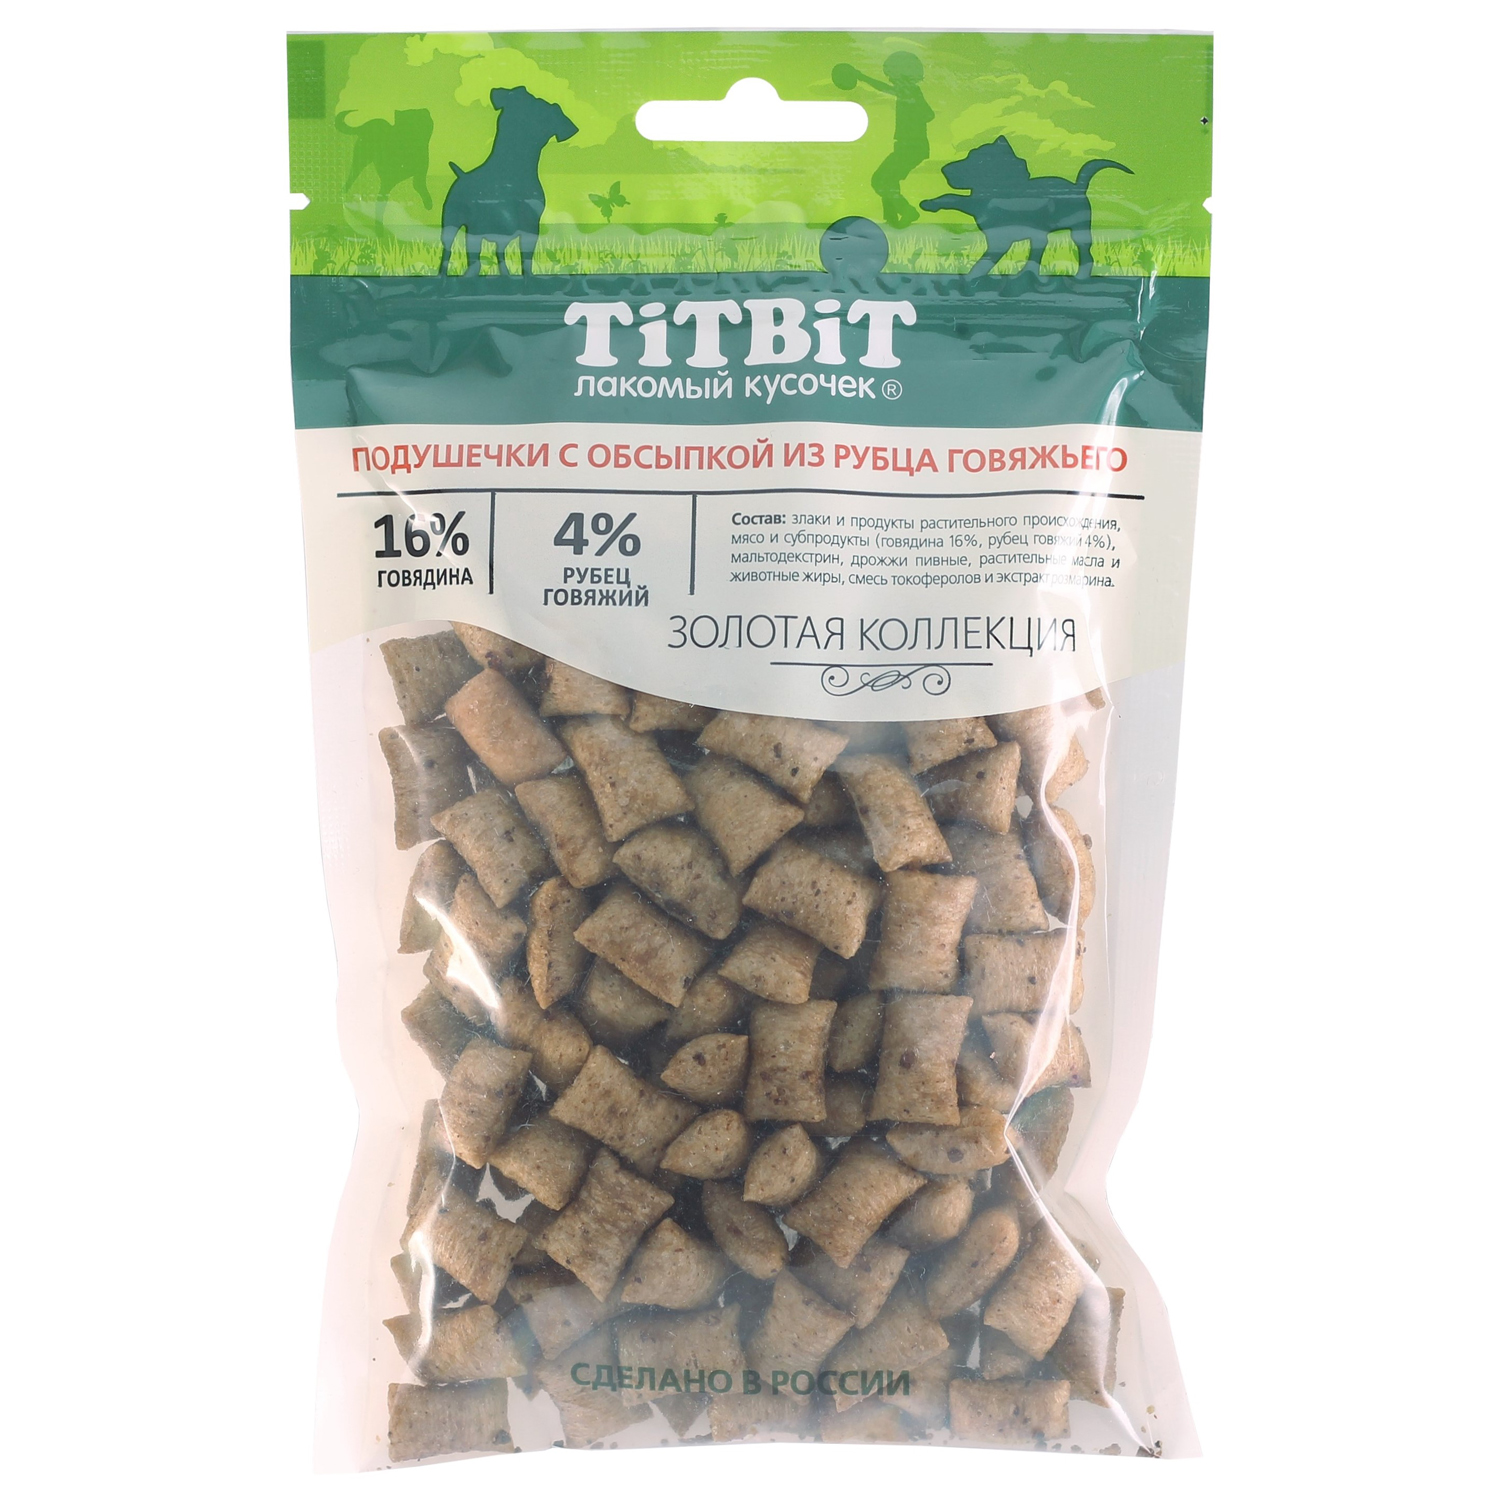 Лакомство TiTBiT Подушечки с обсыпкой из рубца говяжьего для собак Золотая коллекция 80 г